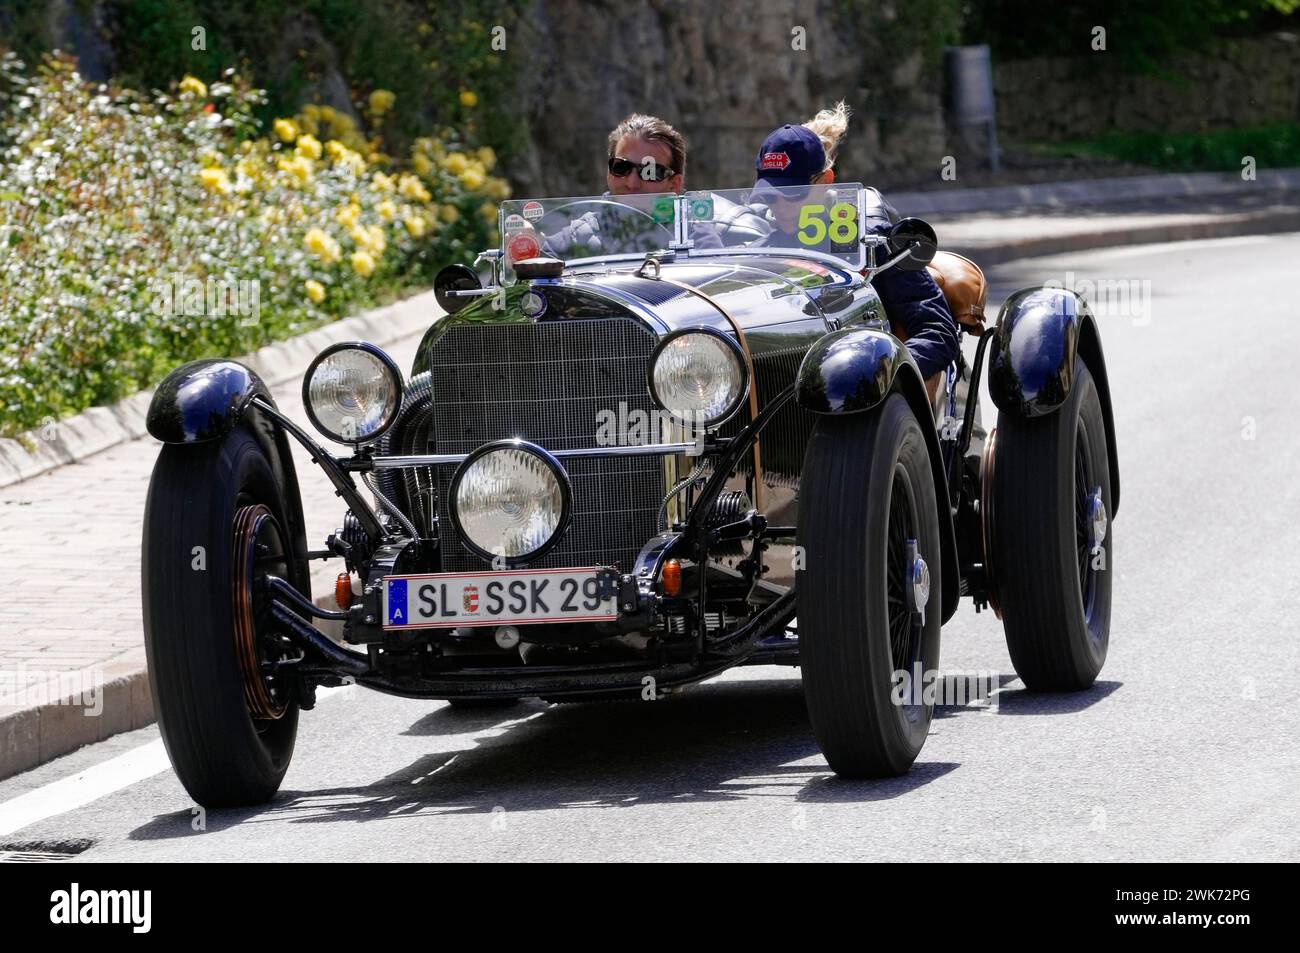 Mille Miglia 2014 ou 1000 Miglia, No.58, Mercedes-Benz 710 SSK, construit en 1929, course de voitures classiques, Saint-Marin, Italie Banque D'Images